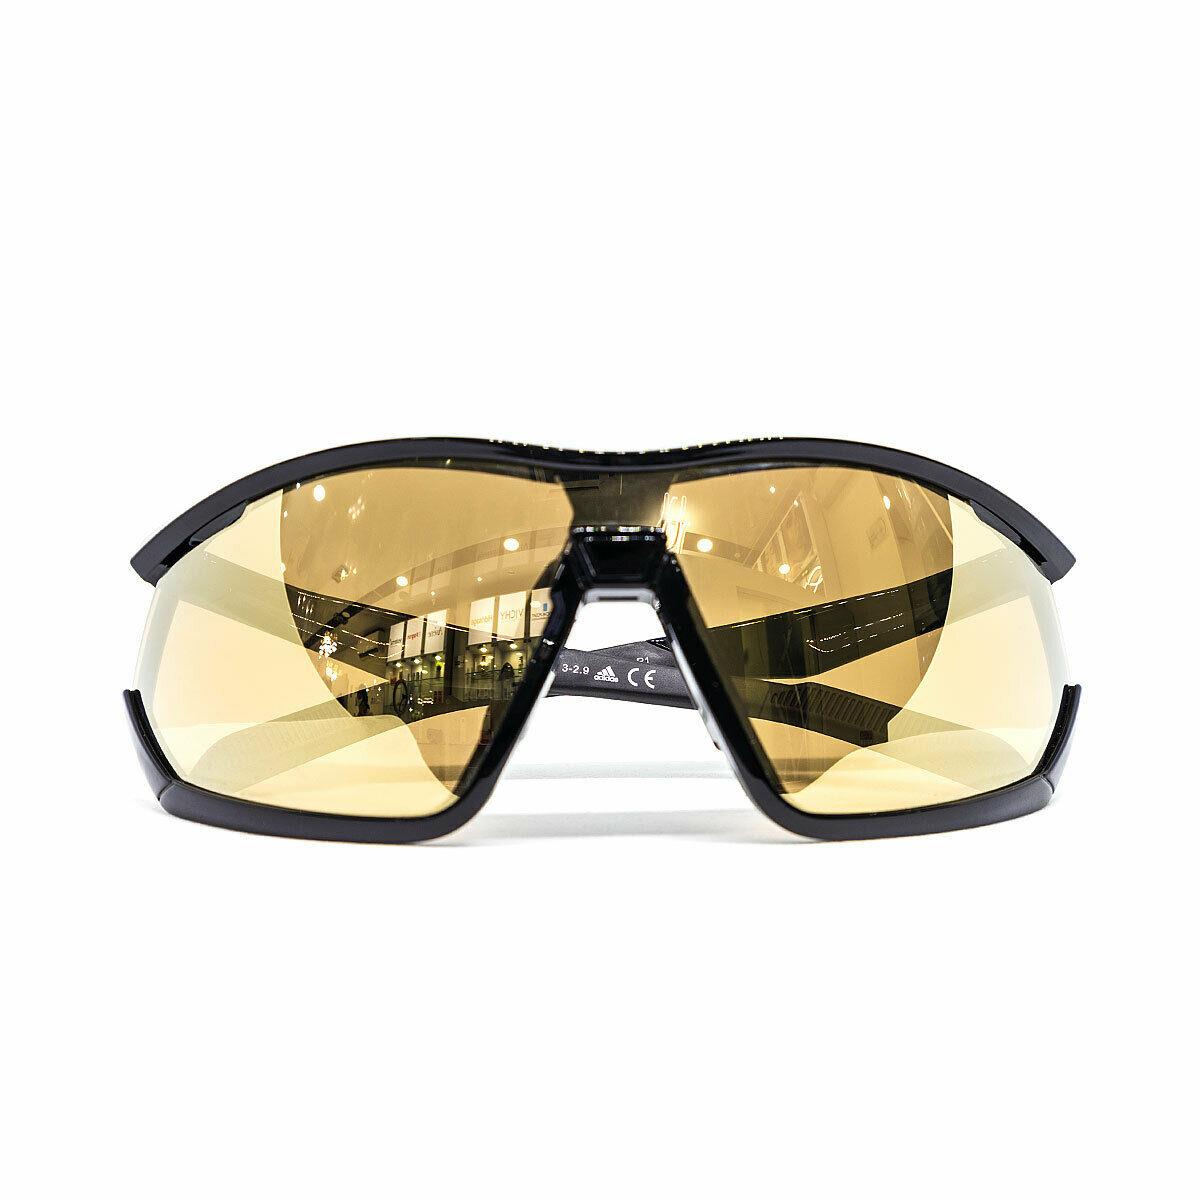 Adidas Sport Sunglasses SP0002 01G Gloss Black Frame Gold Mirrored Lenses